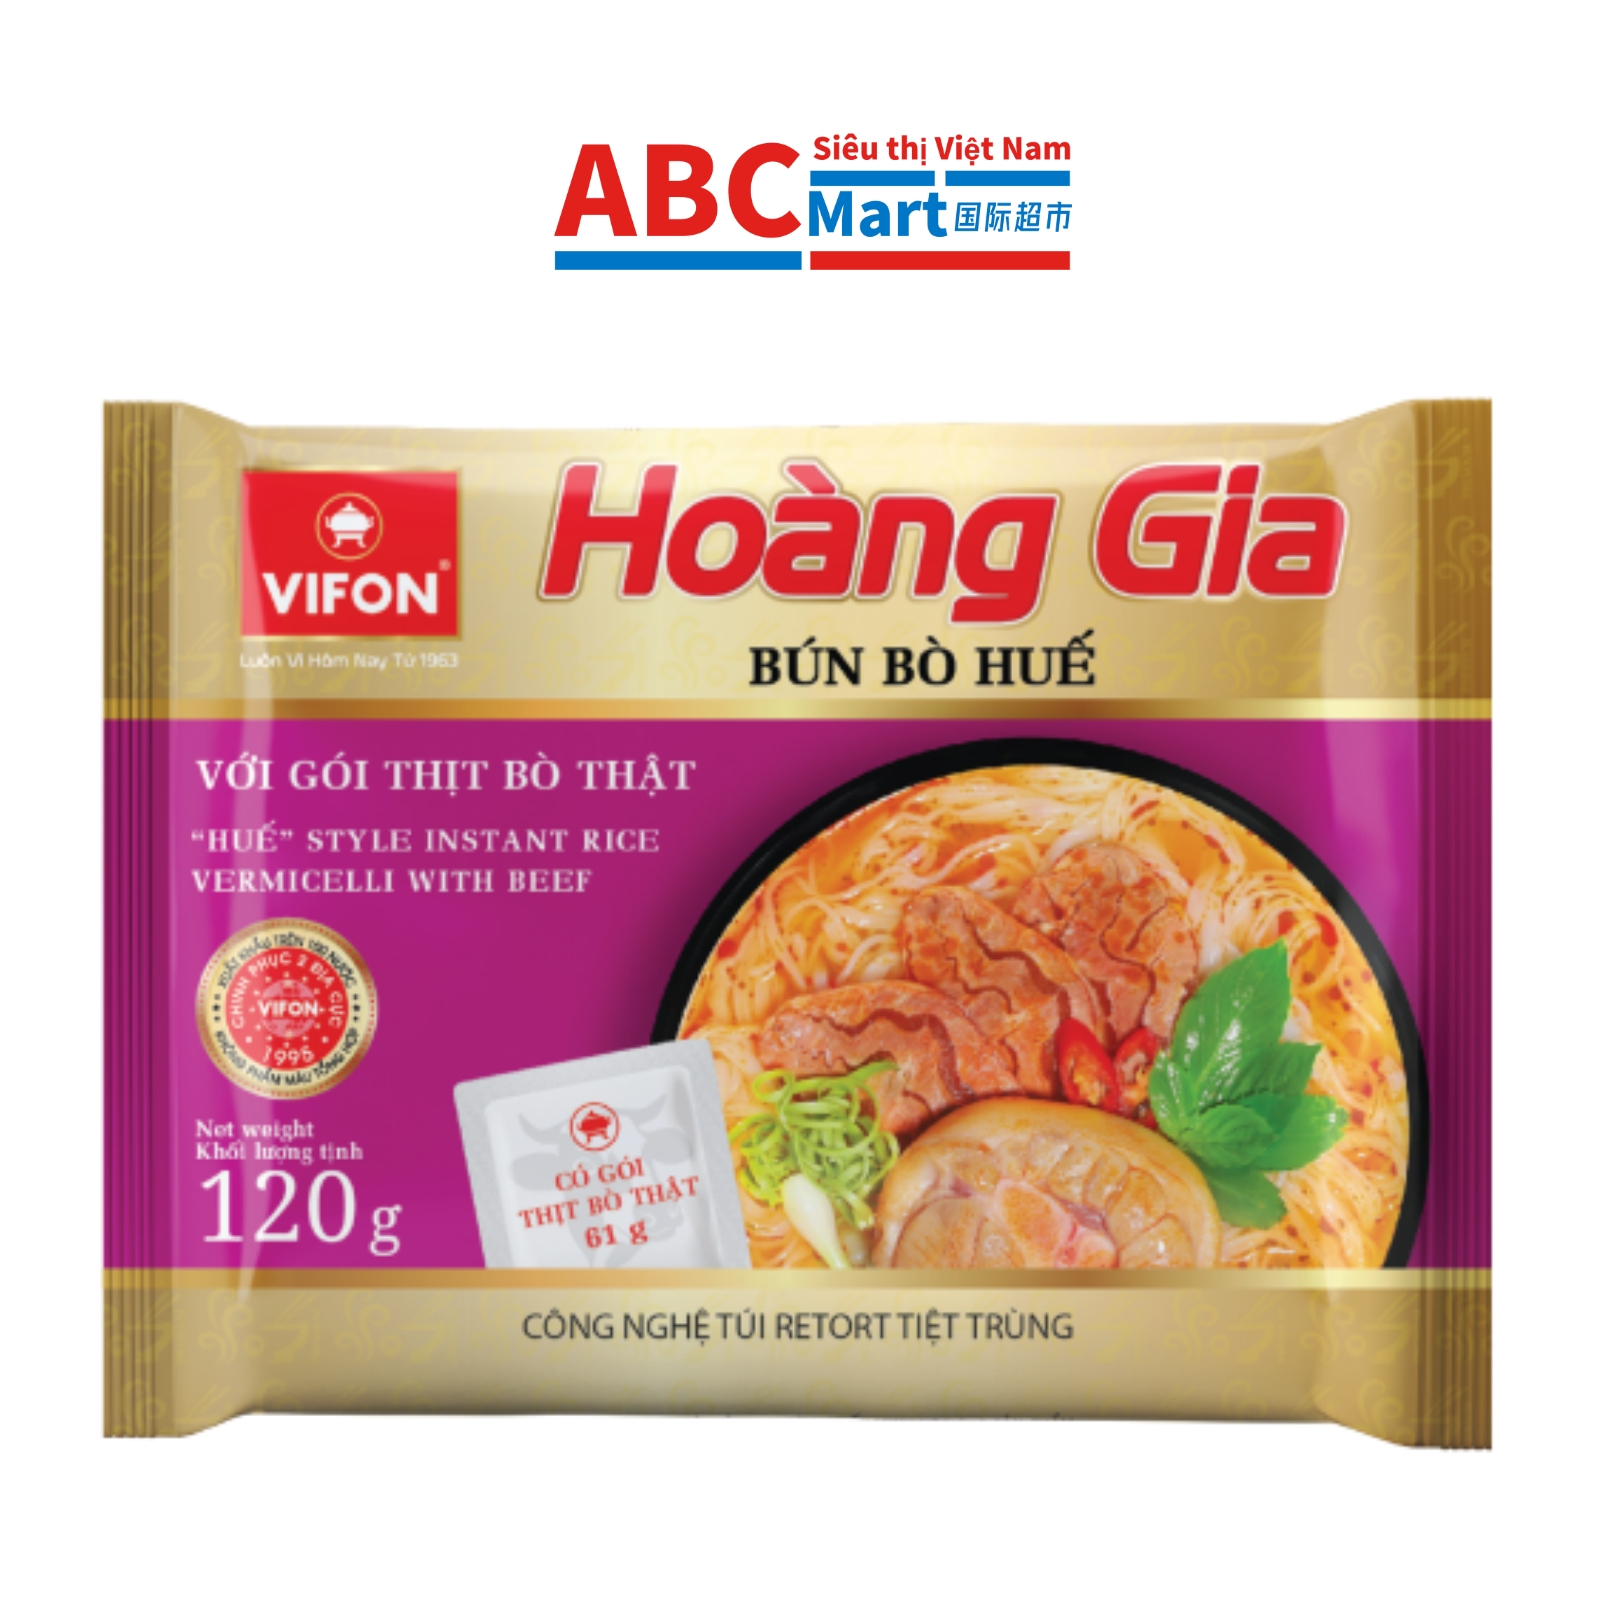 【Việt Nam-Bún Bò Huế Hoàng Gia Vifon 120g 】牛肉河粉120g-ABCMart 国际超市